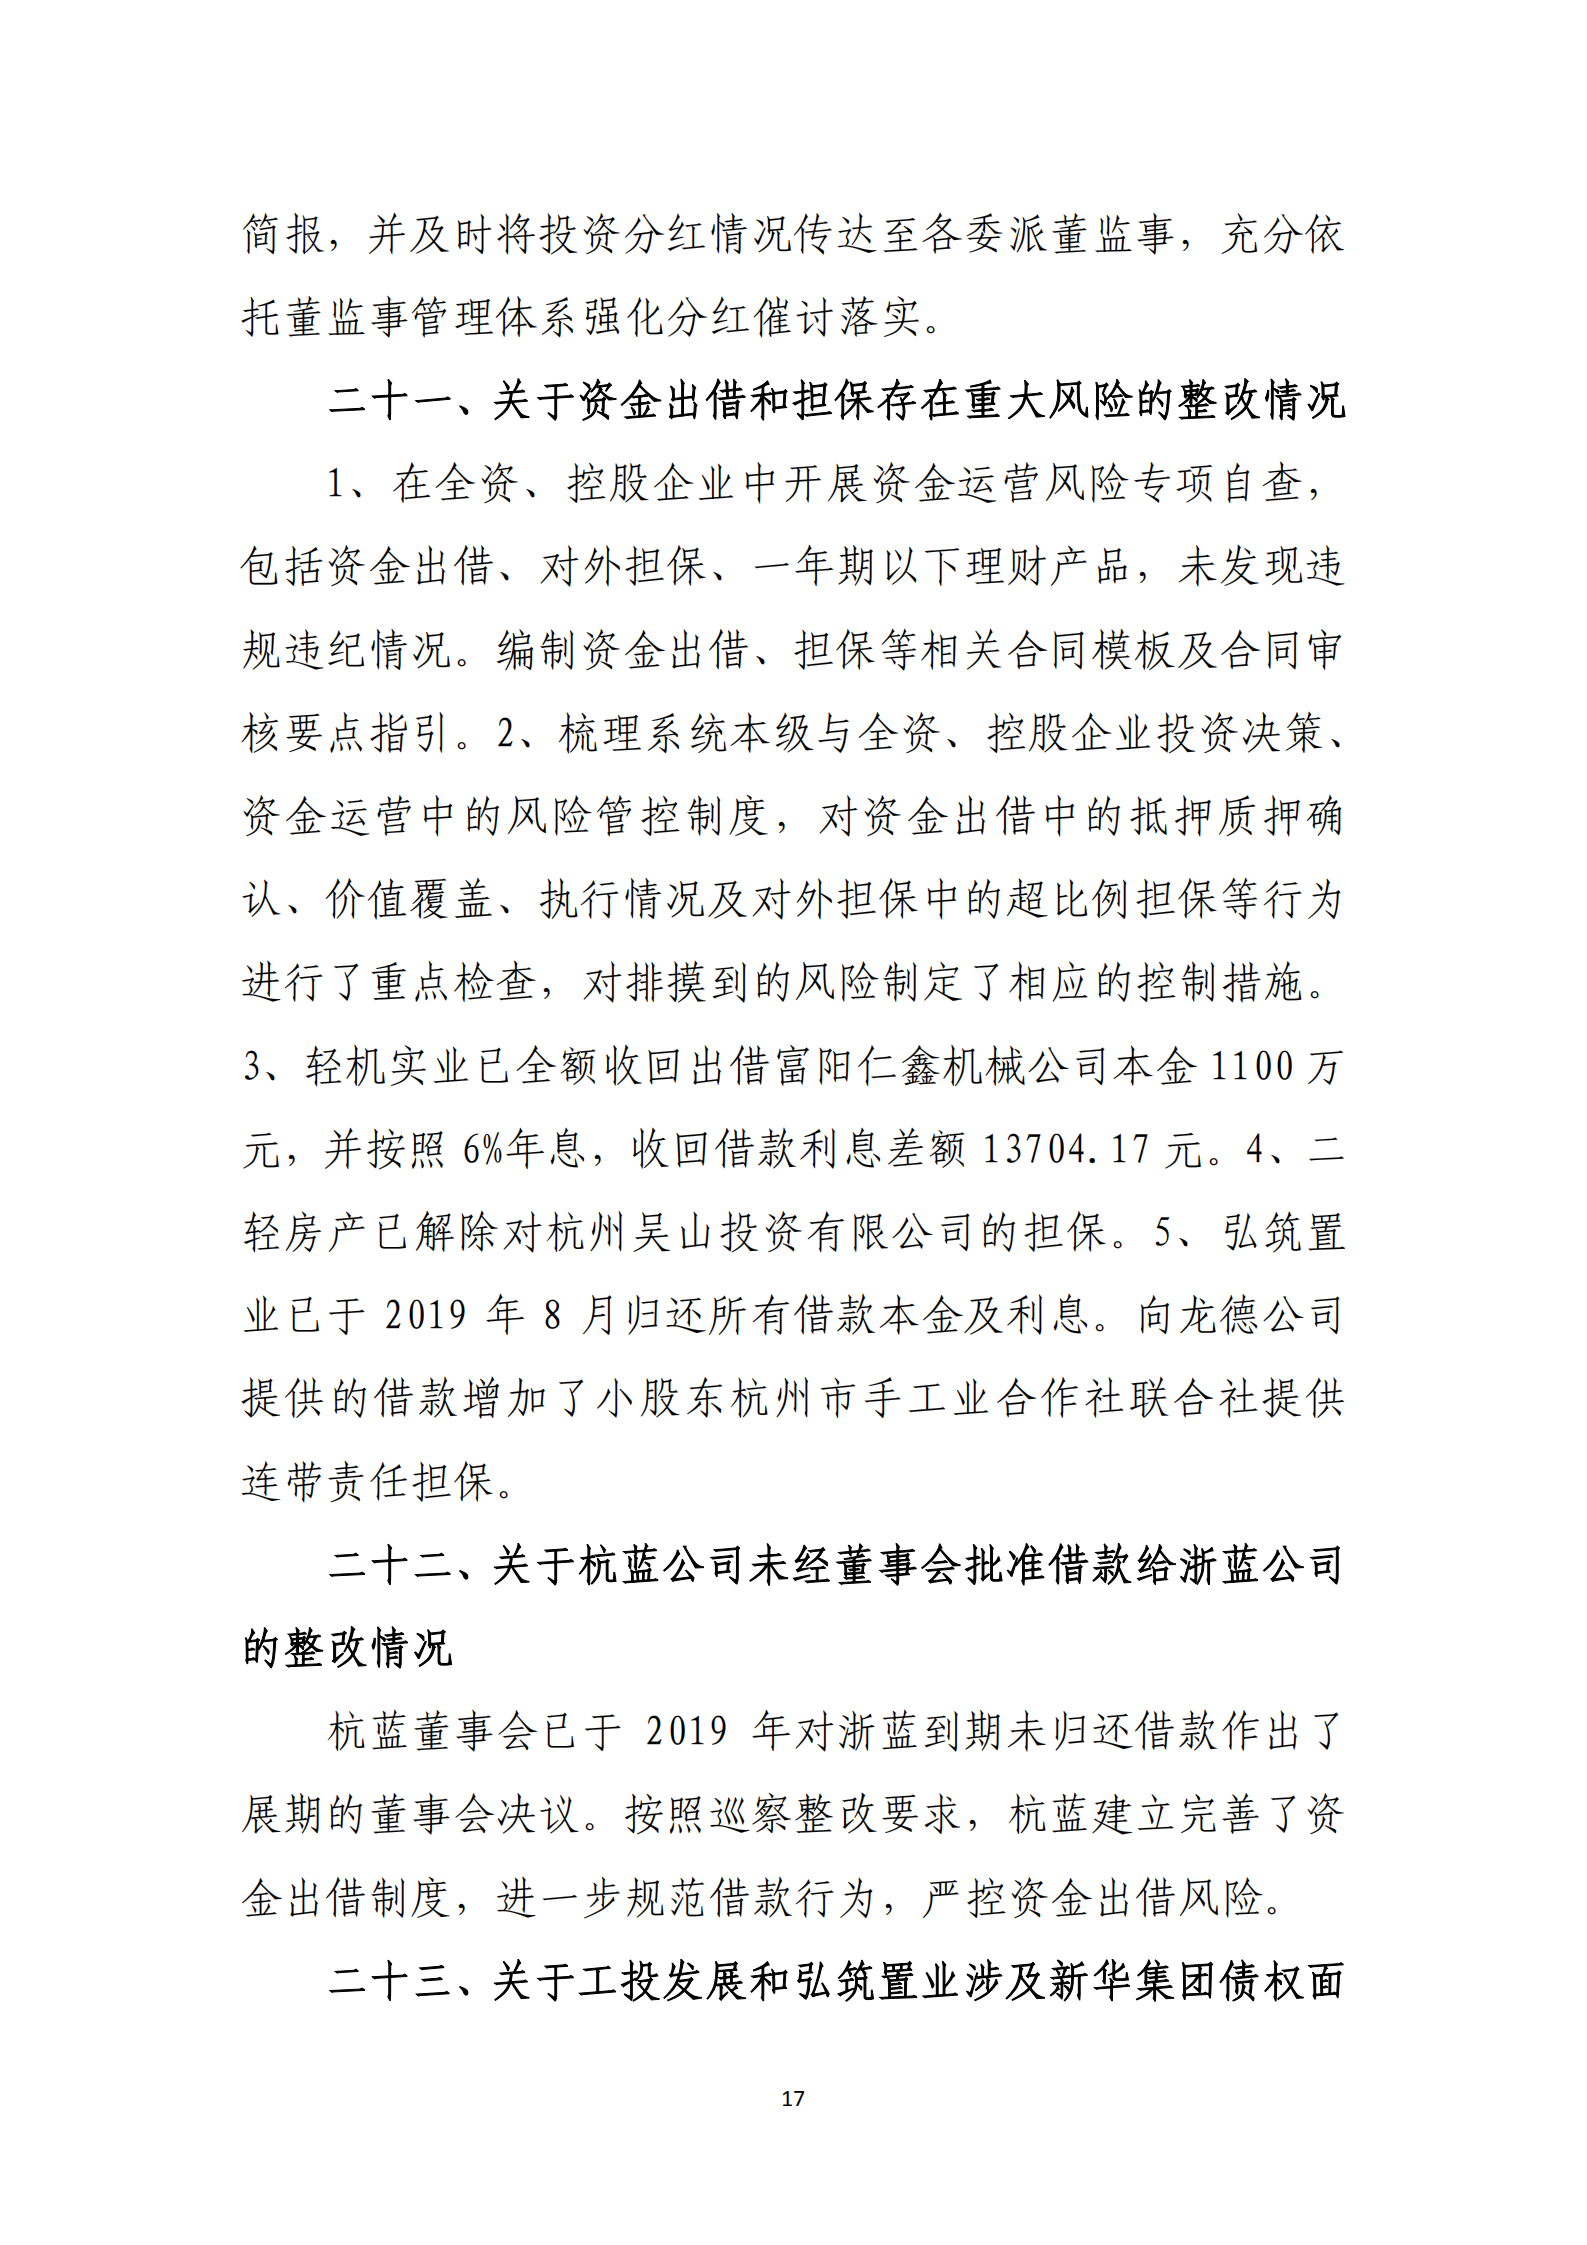 博乐体育网页【中国】有限公司党委关于巡察整改情况的通报_16.png